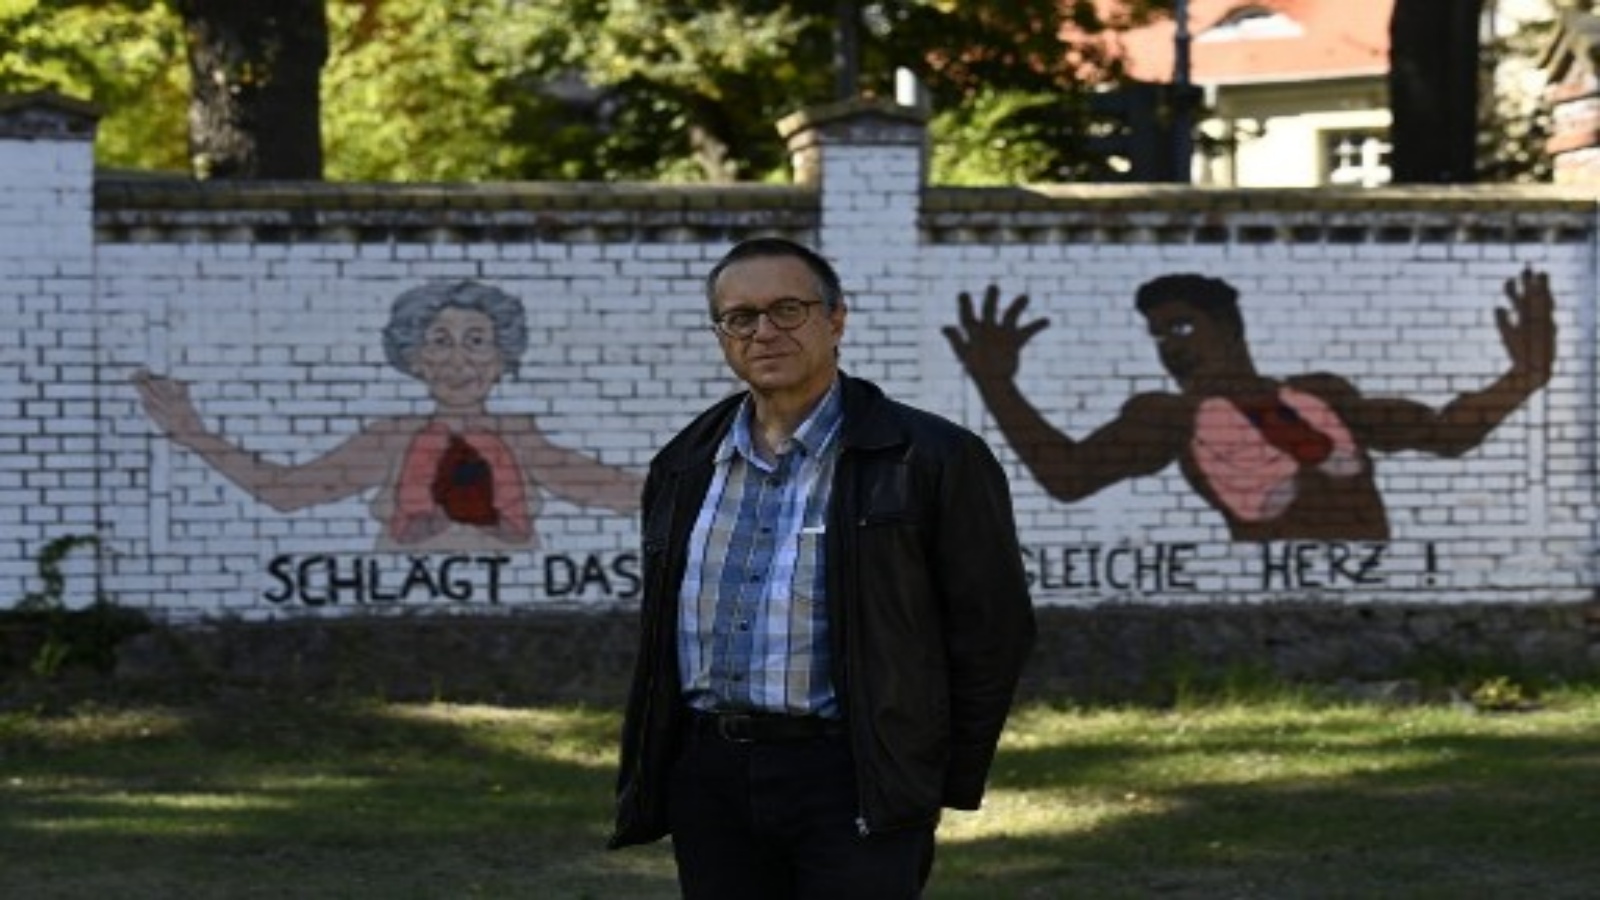 مارتن أوسينسكي في حديقة عامة مع كتابات على الجدار الخلفي كتب عليه 